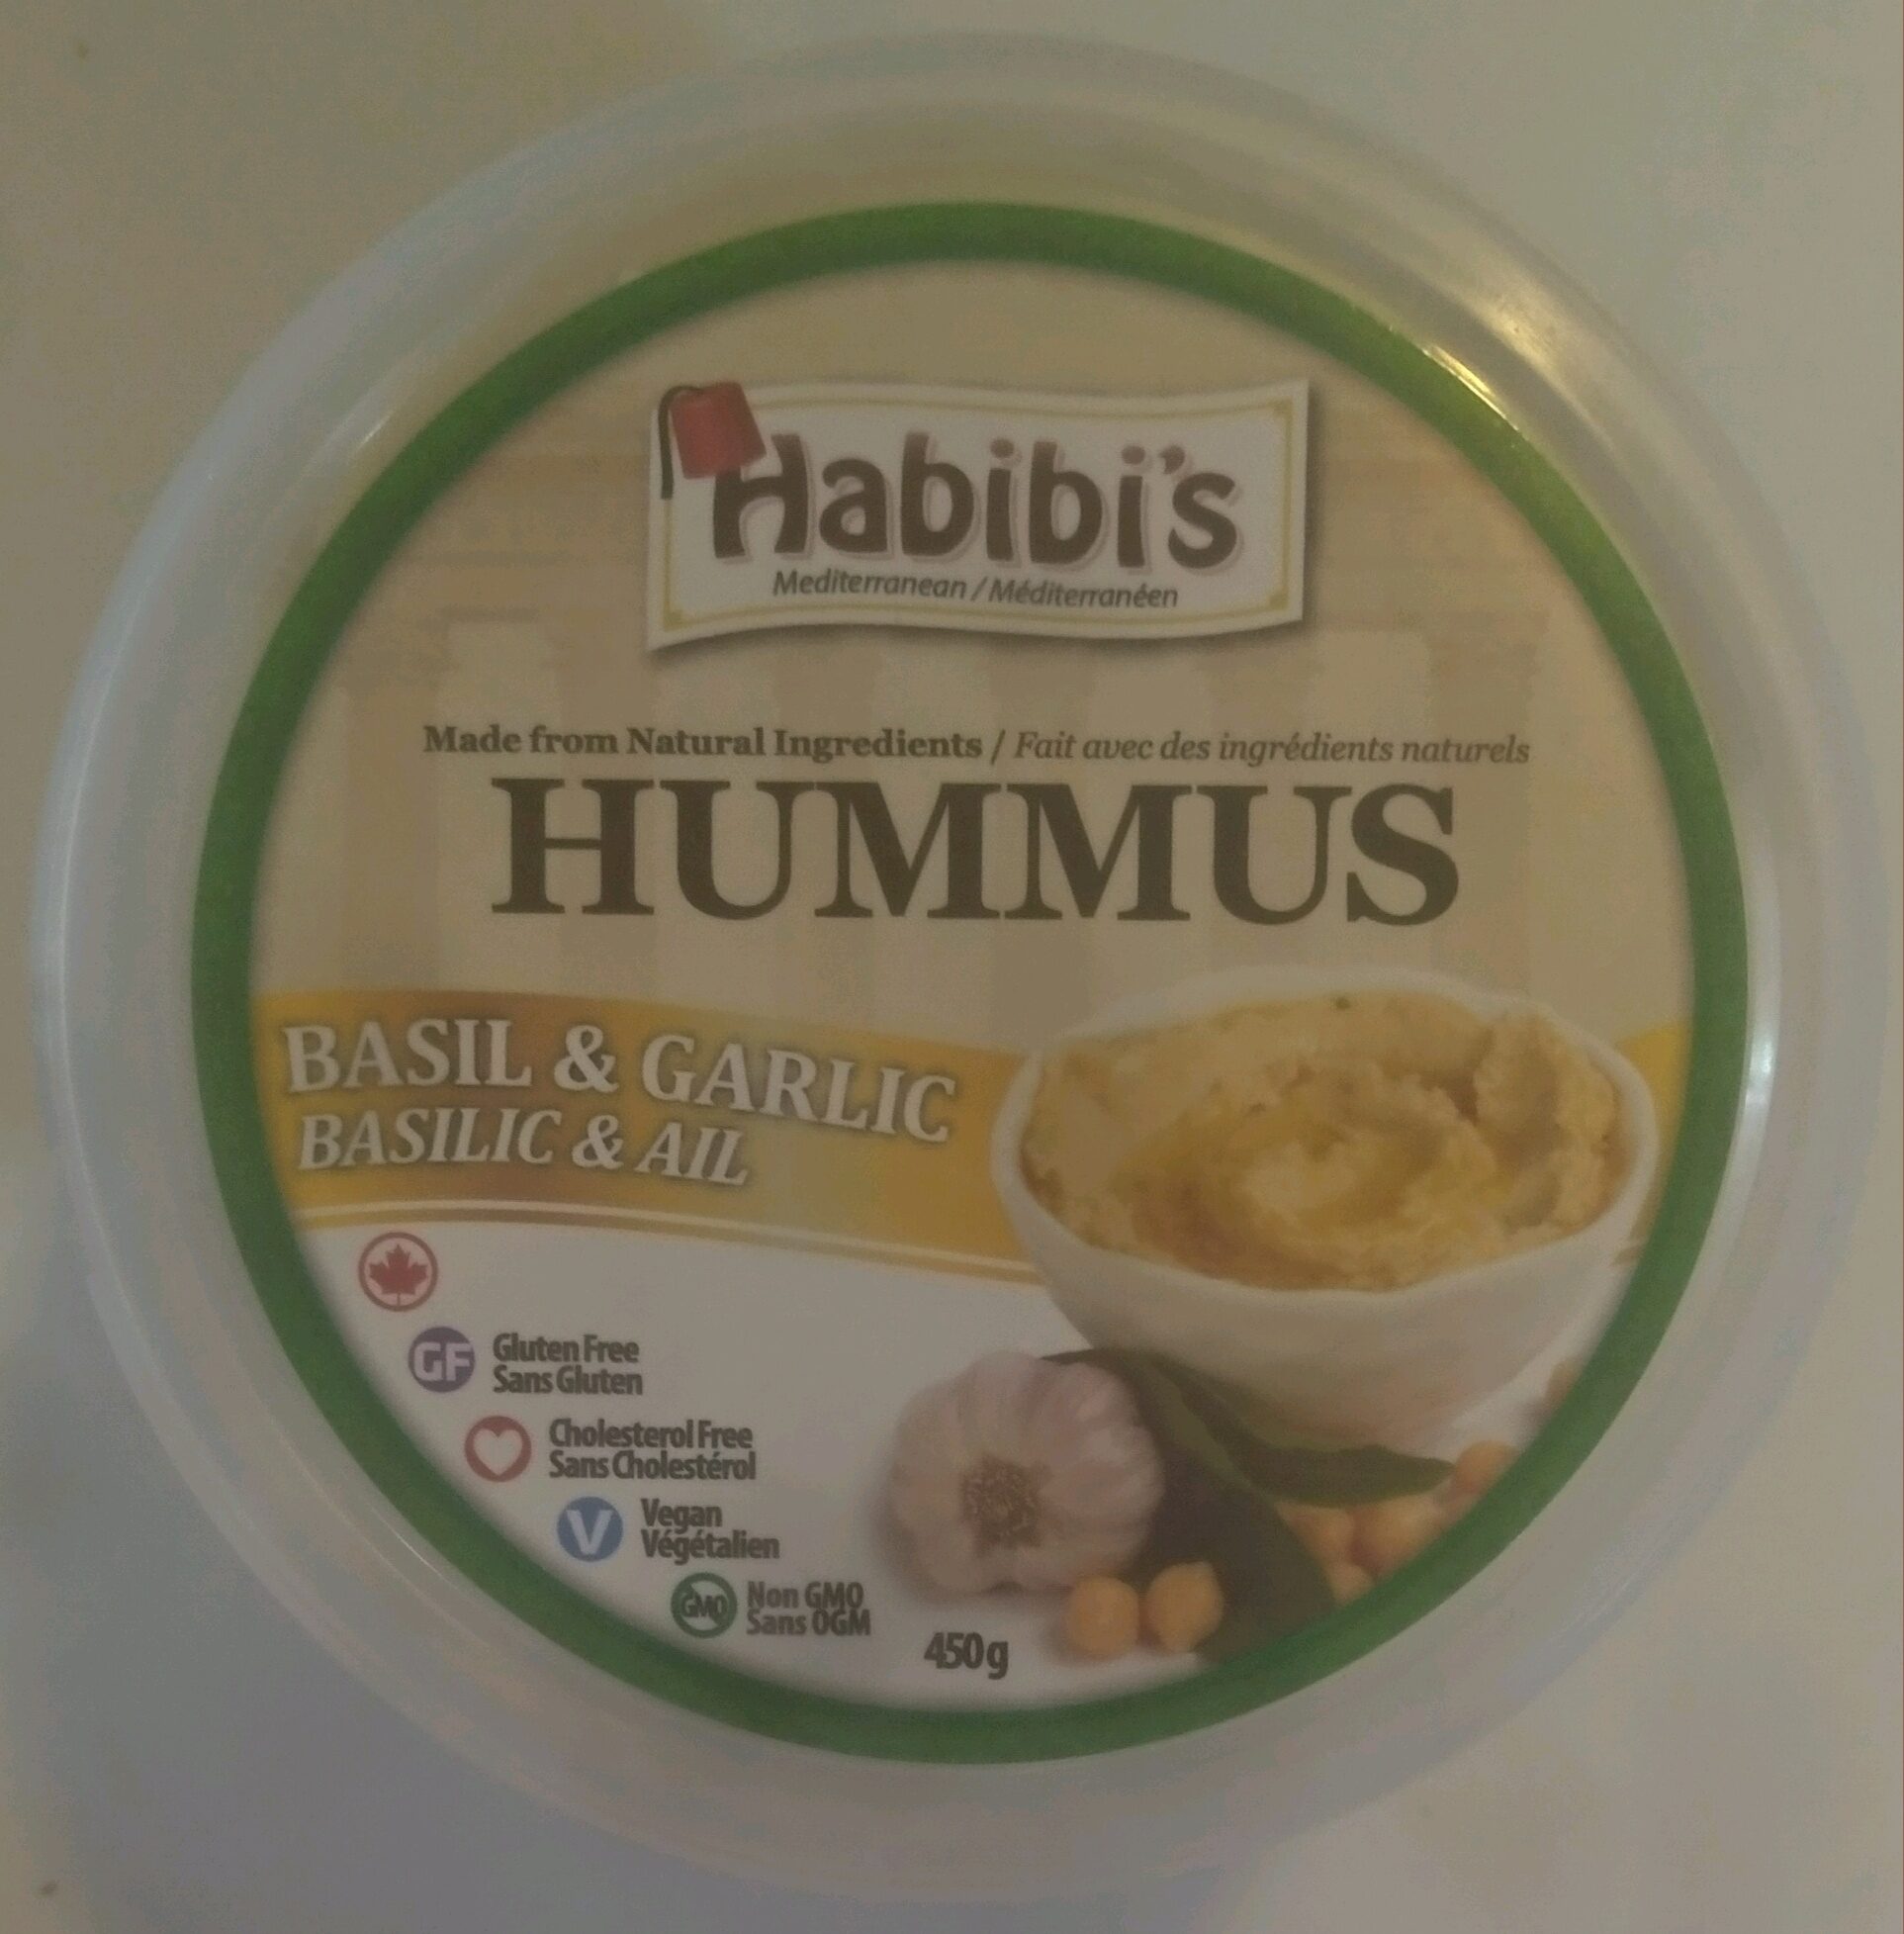 Basil & Garlic Hummus - Product